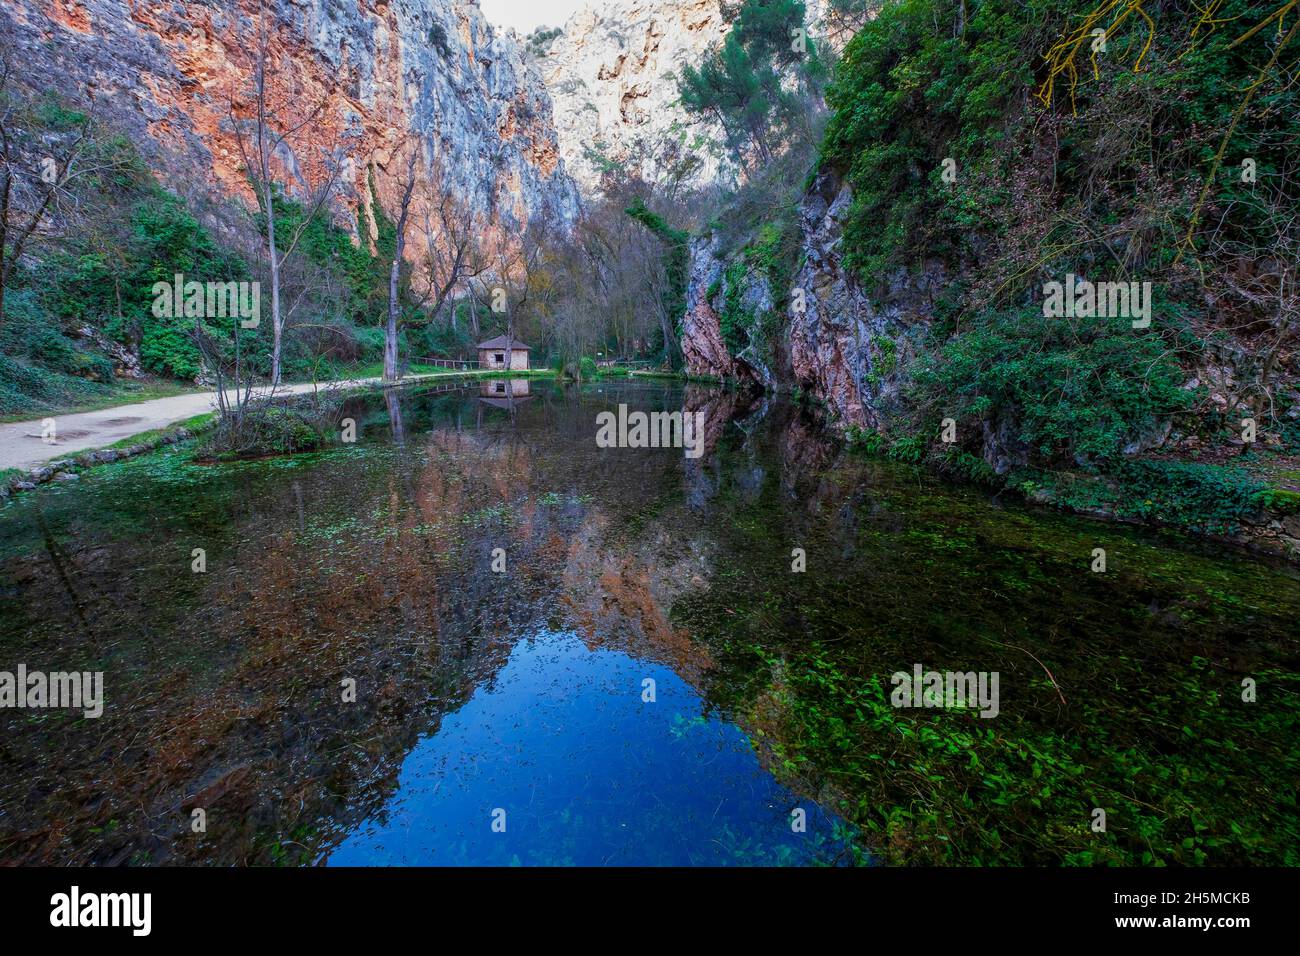 Waterfall in the Monasterio de Piedra (Piedra Monastery) park, Saragossa, Aragon, Spain Stock Photo